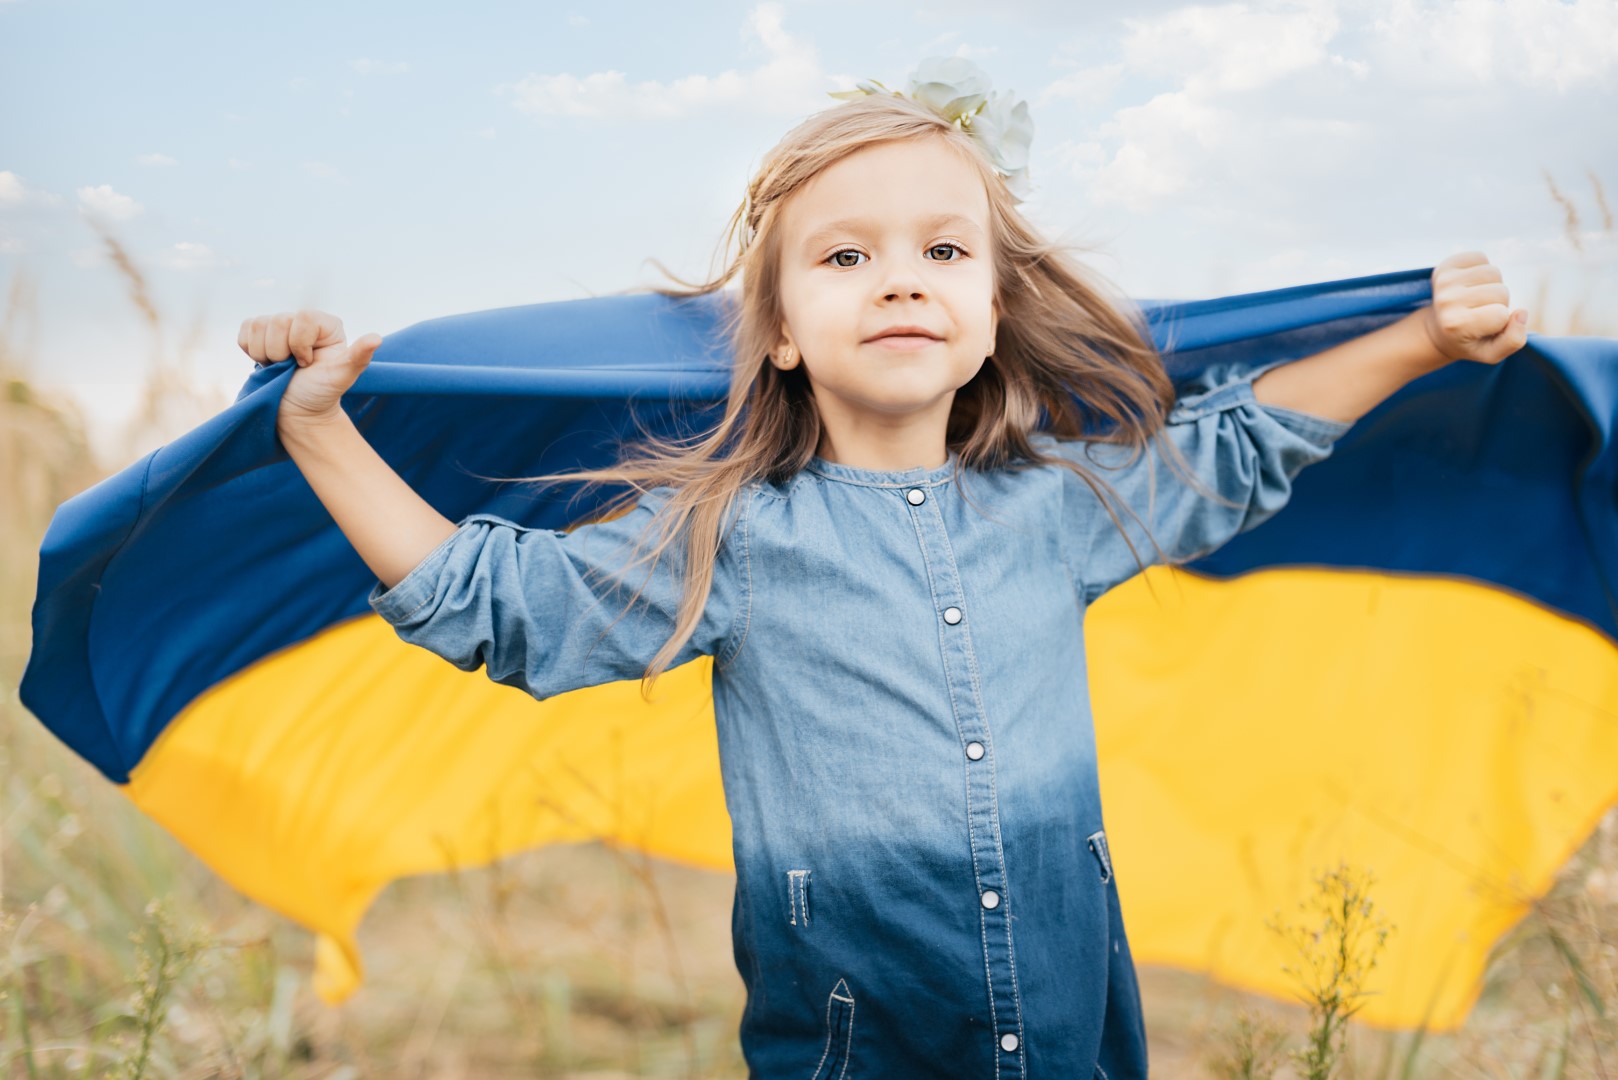 Children in Ukraine need us urgently